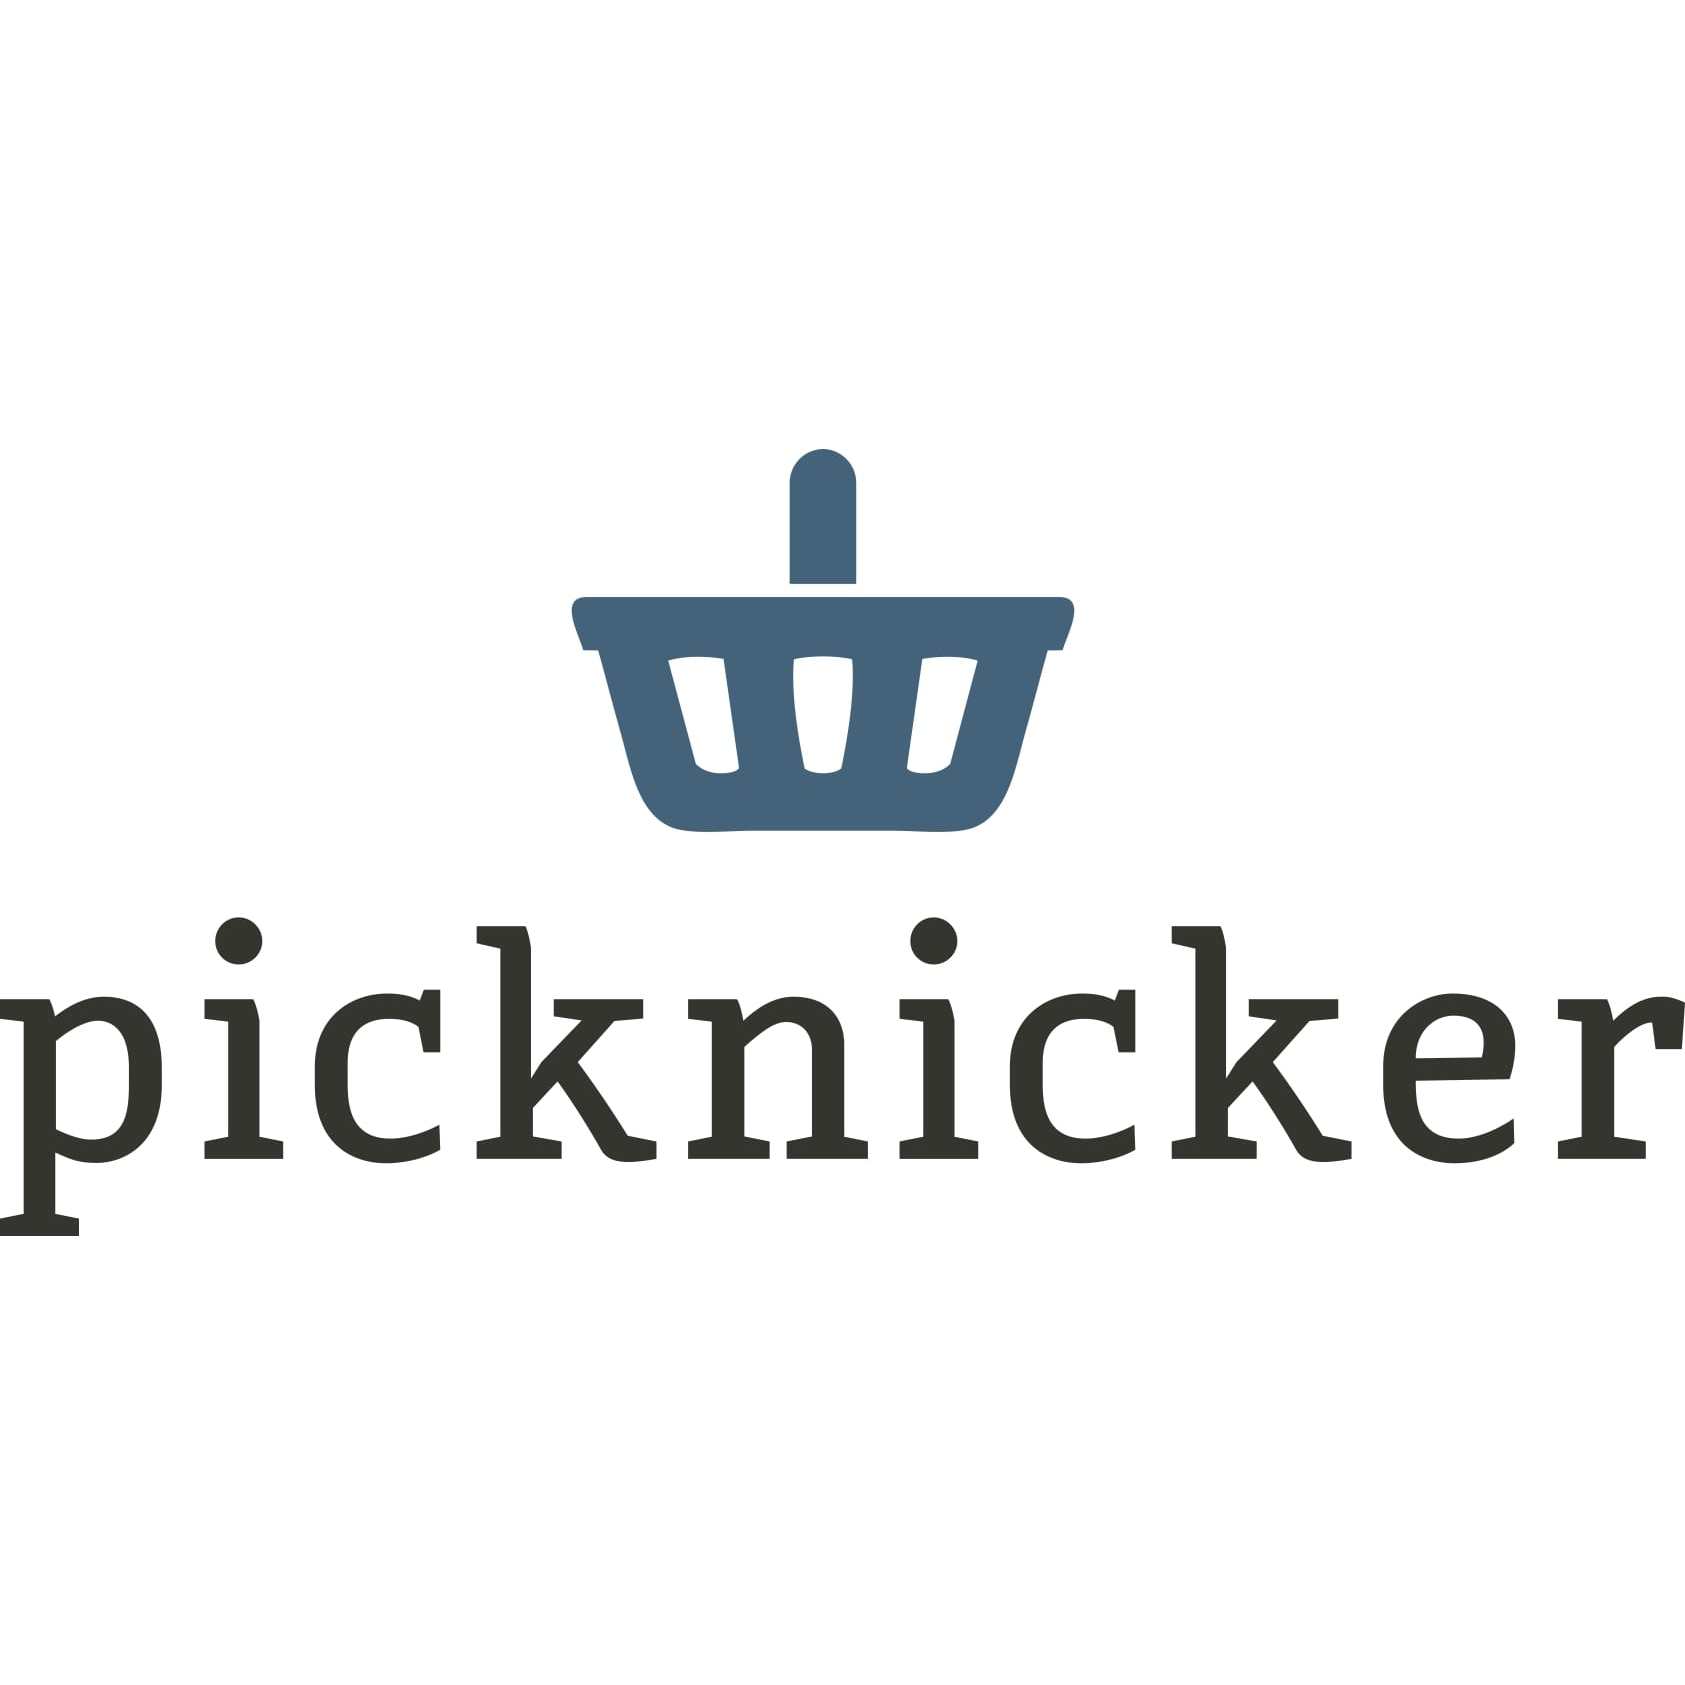 Picknicker Logo